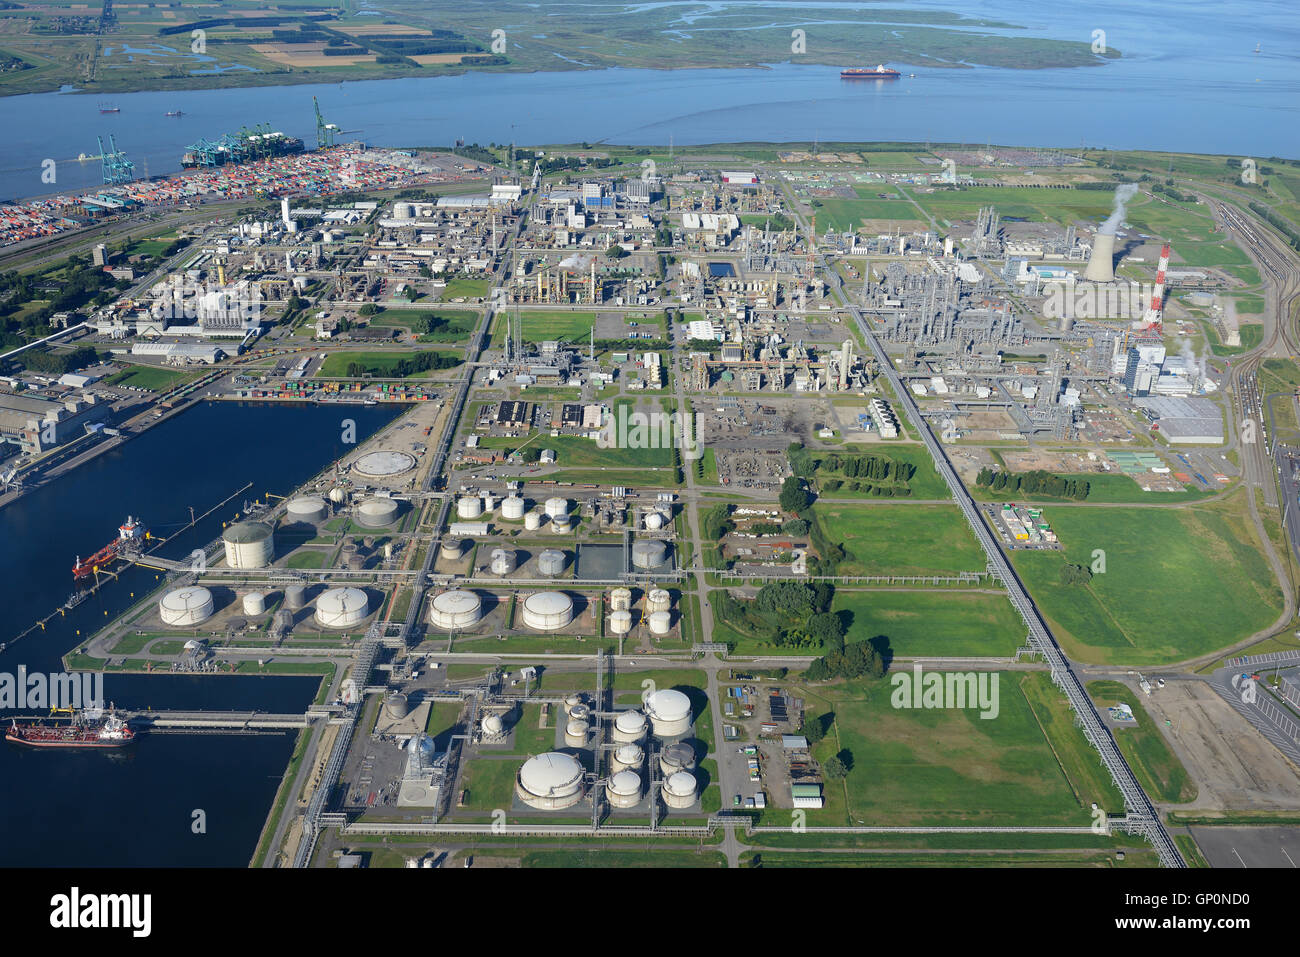 LUFTAUFNAHME. Chemieproduktionsstandort der BASF Antwerpen. Antwerp Harbour, Flämische Region, Belgien. Stockfoto